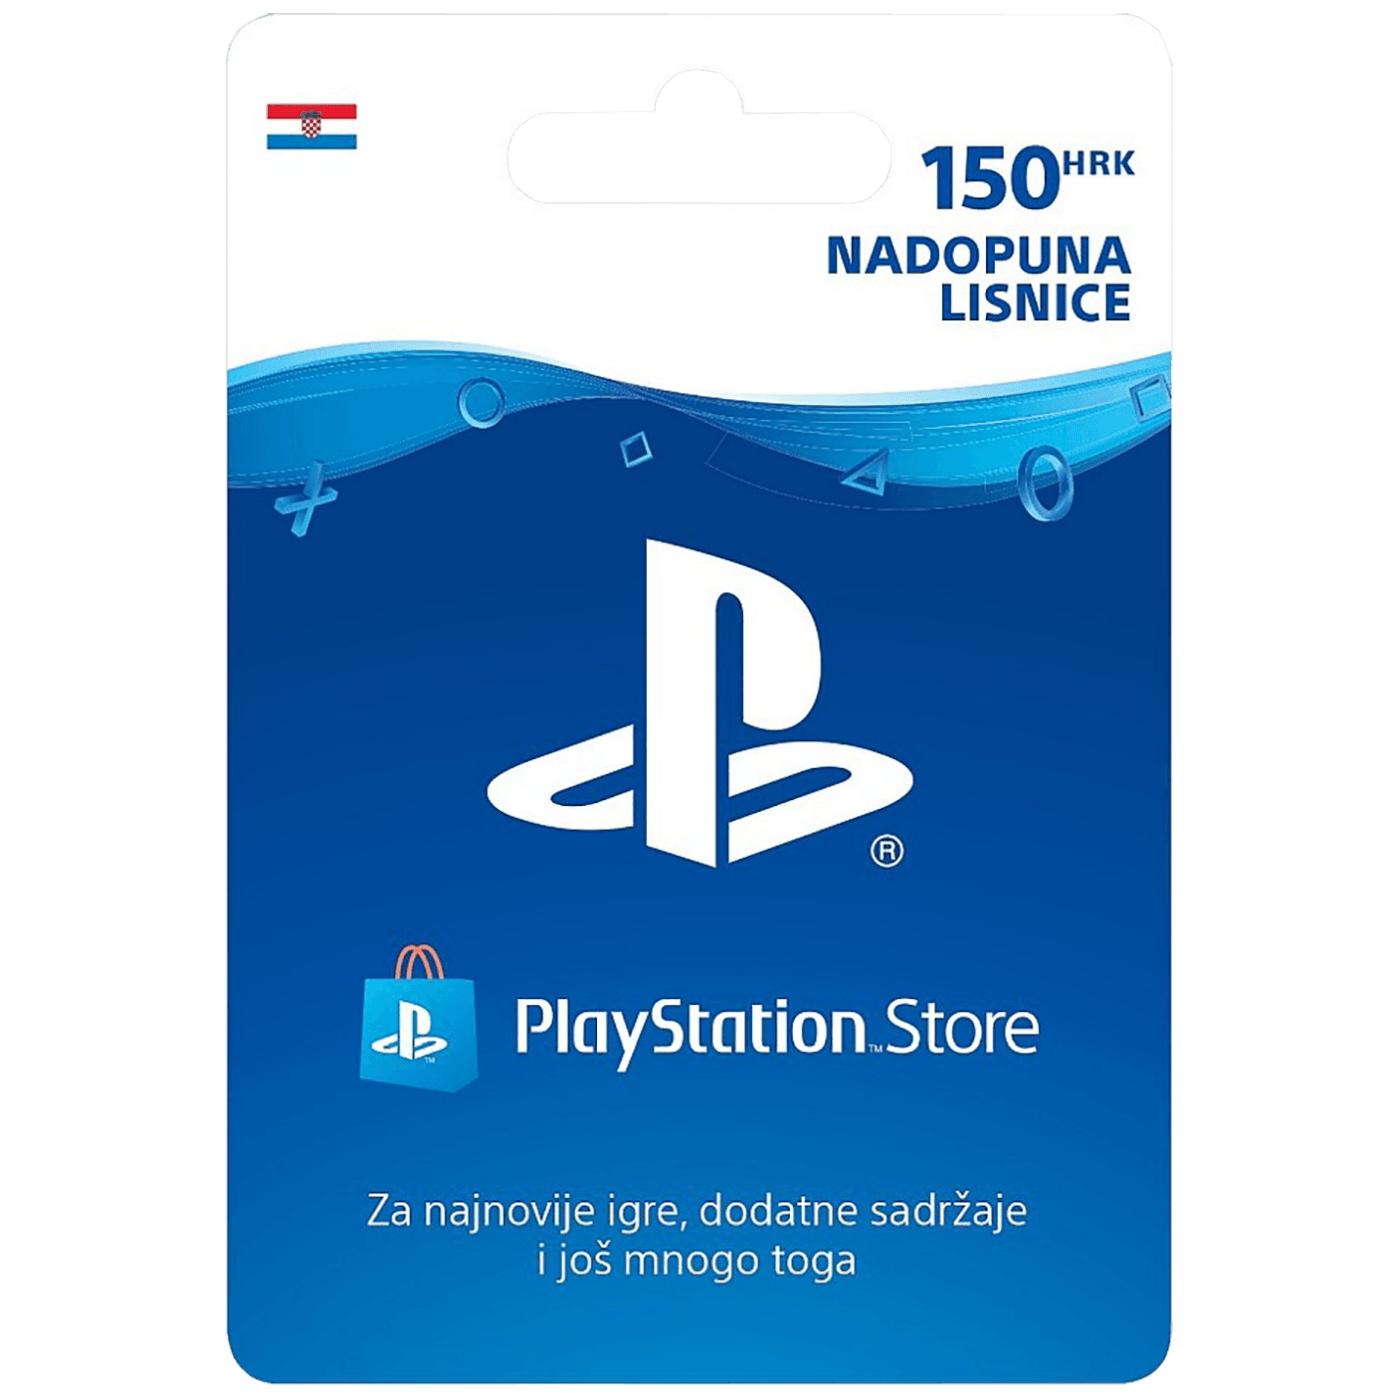 Nadopuna,  PlayStation Live Card